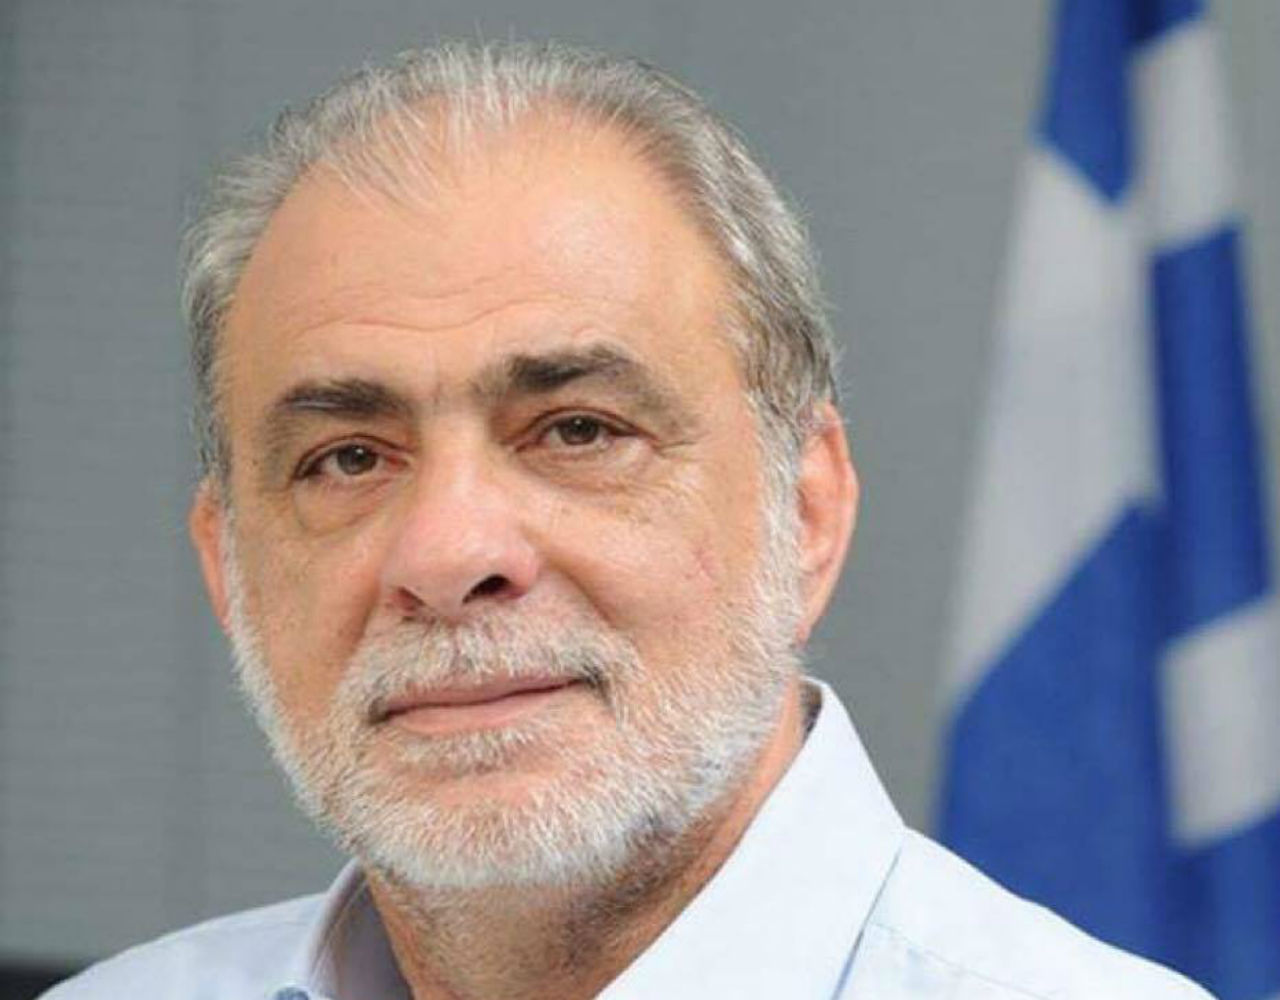 Βασίλης Βαλασόπουλος: «Είμαι περήφανος για την αντιπλημμυρική θωράκιση της Ηλιούπολης»